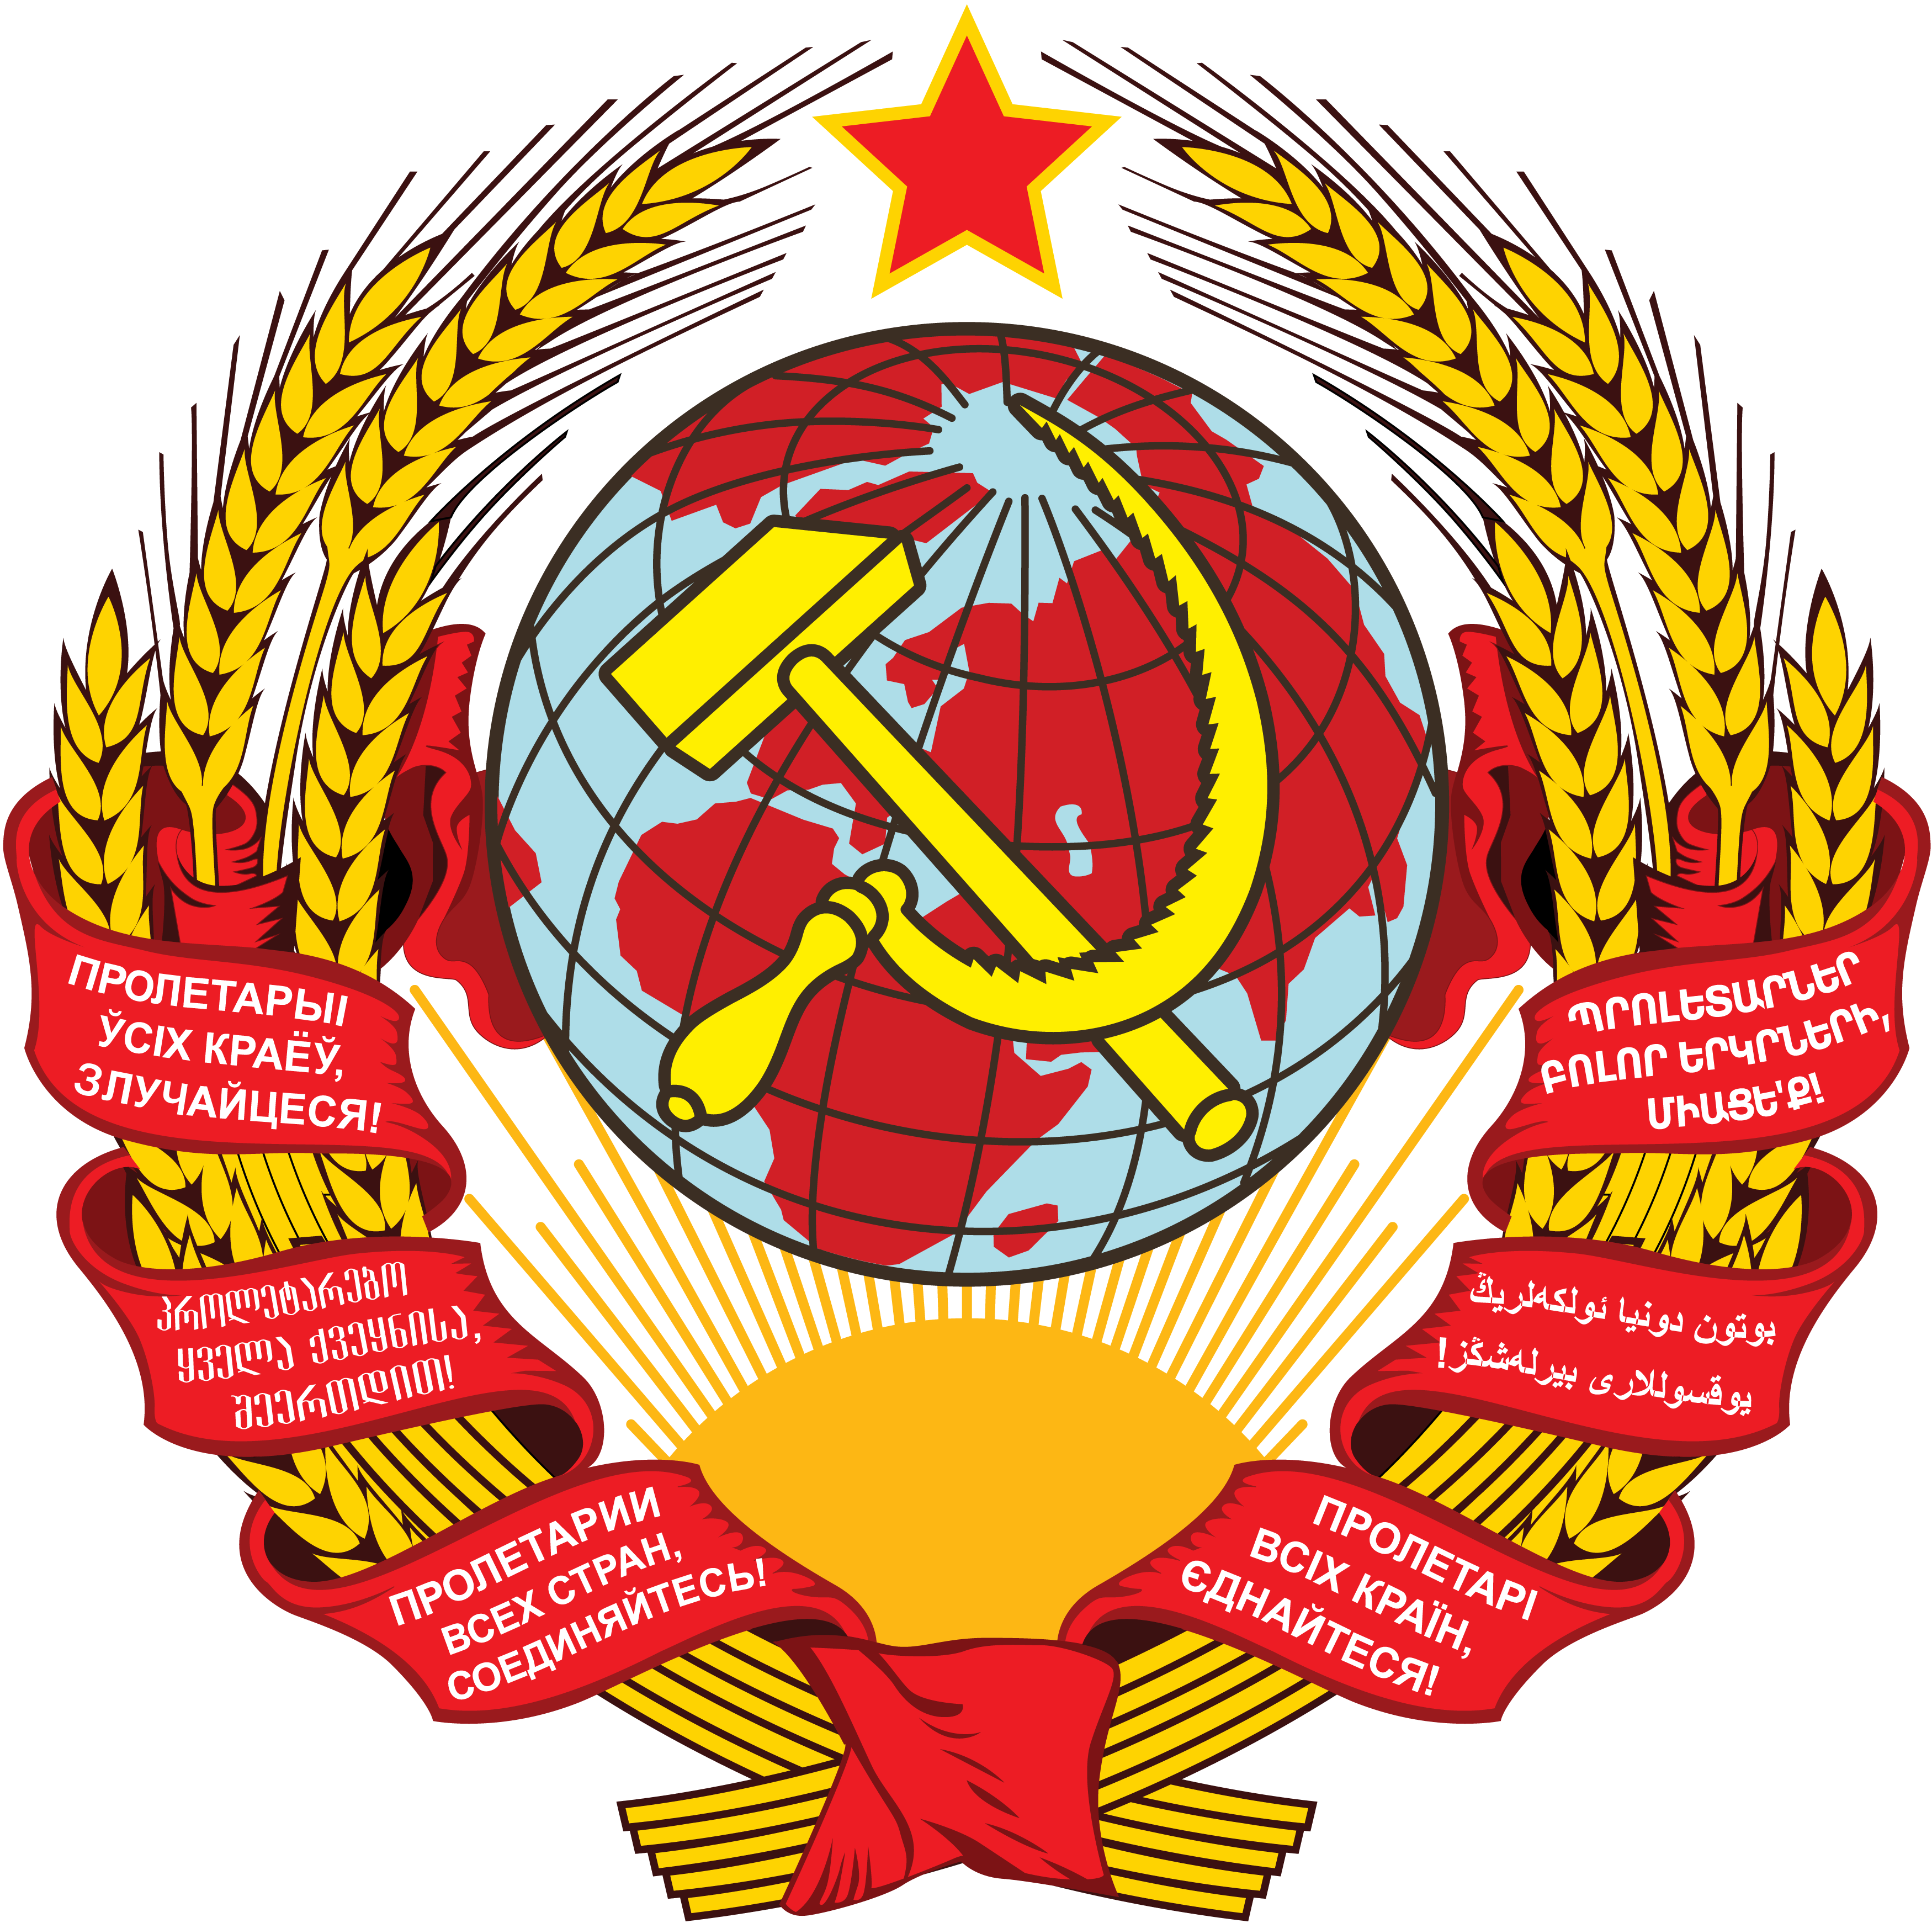 スヴォーロフ勲章 (ソビエト連邦)